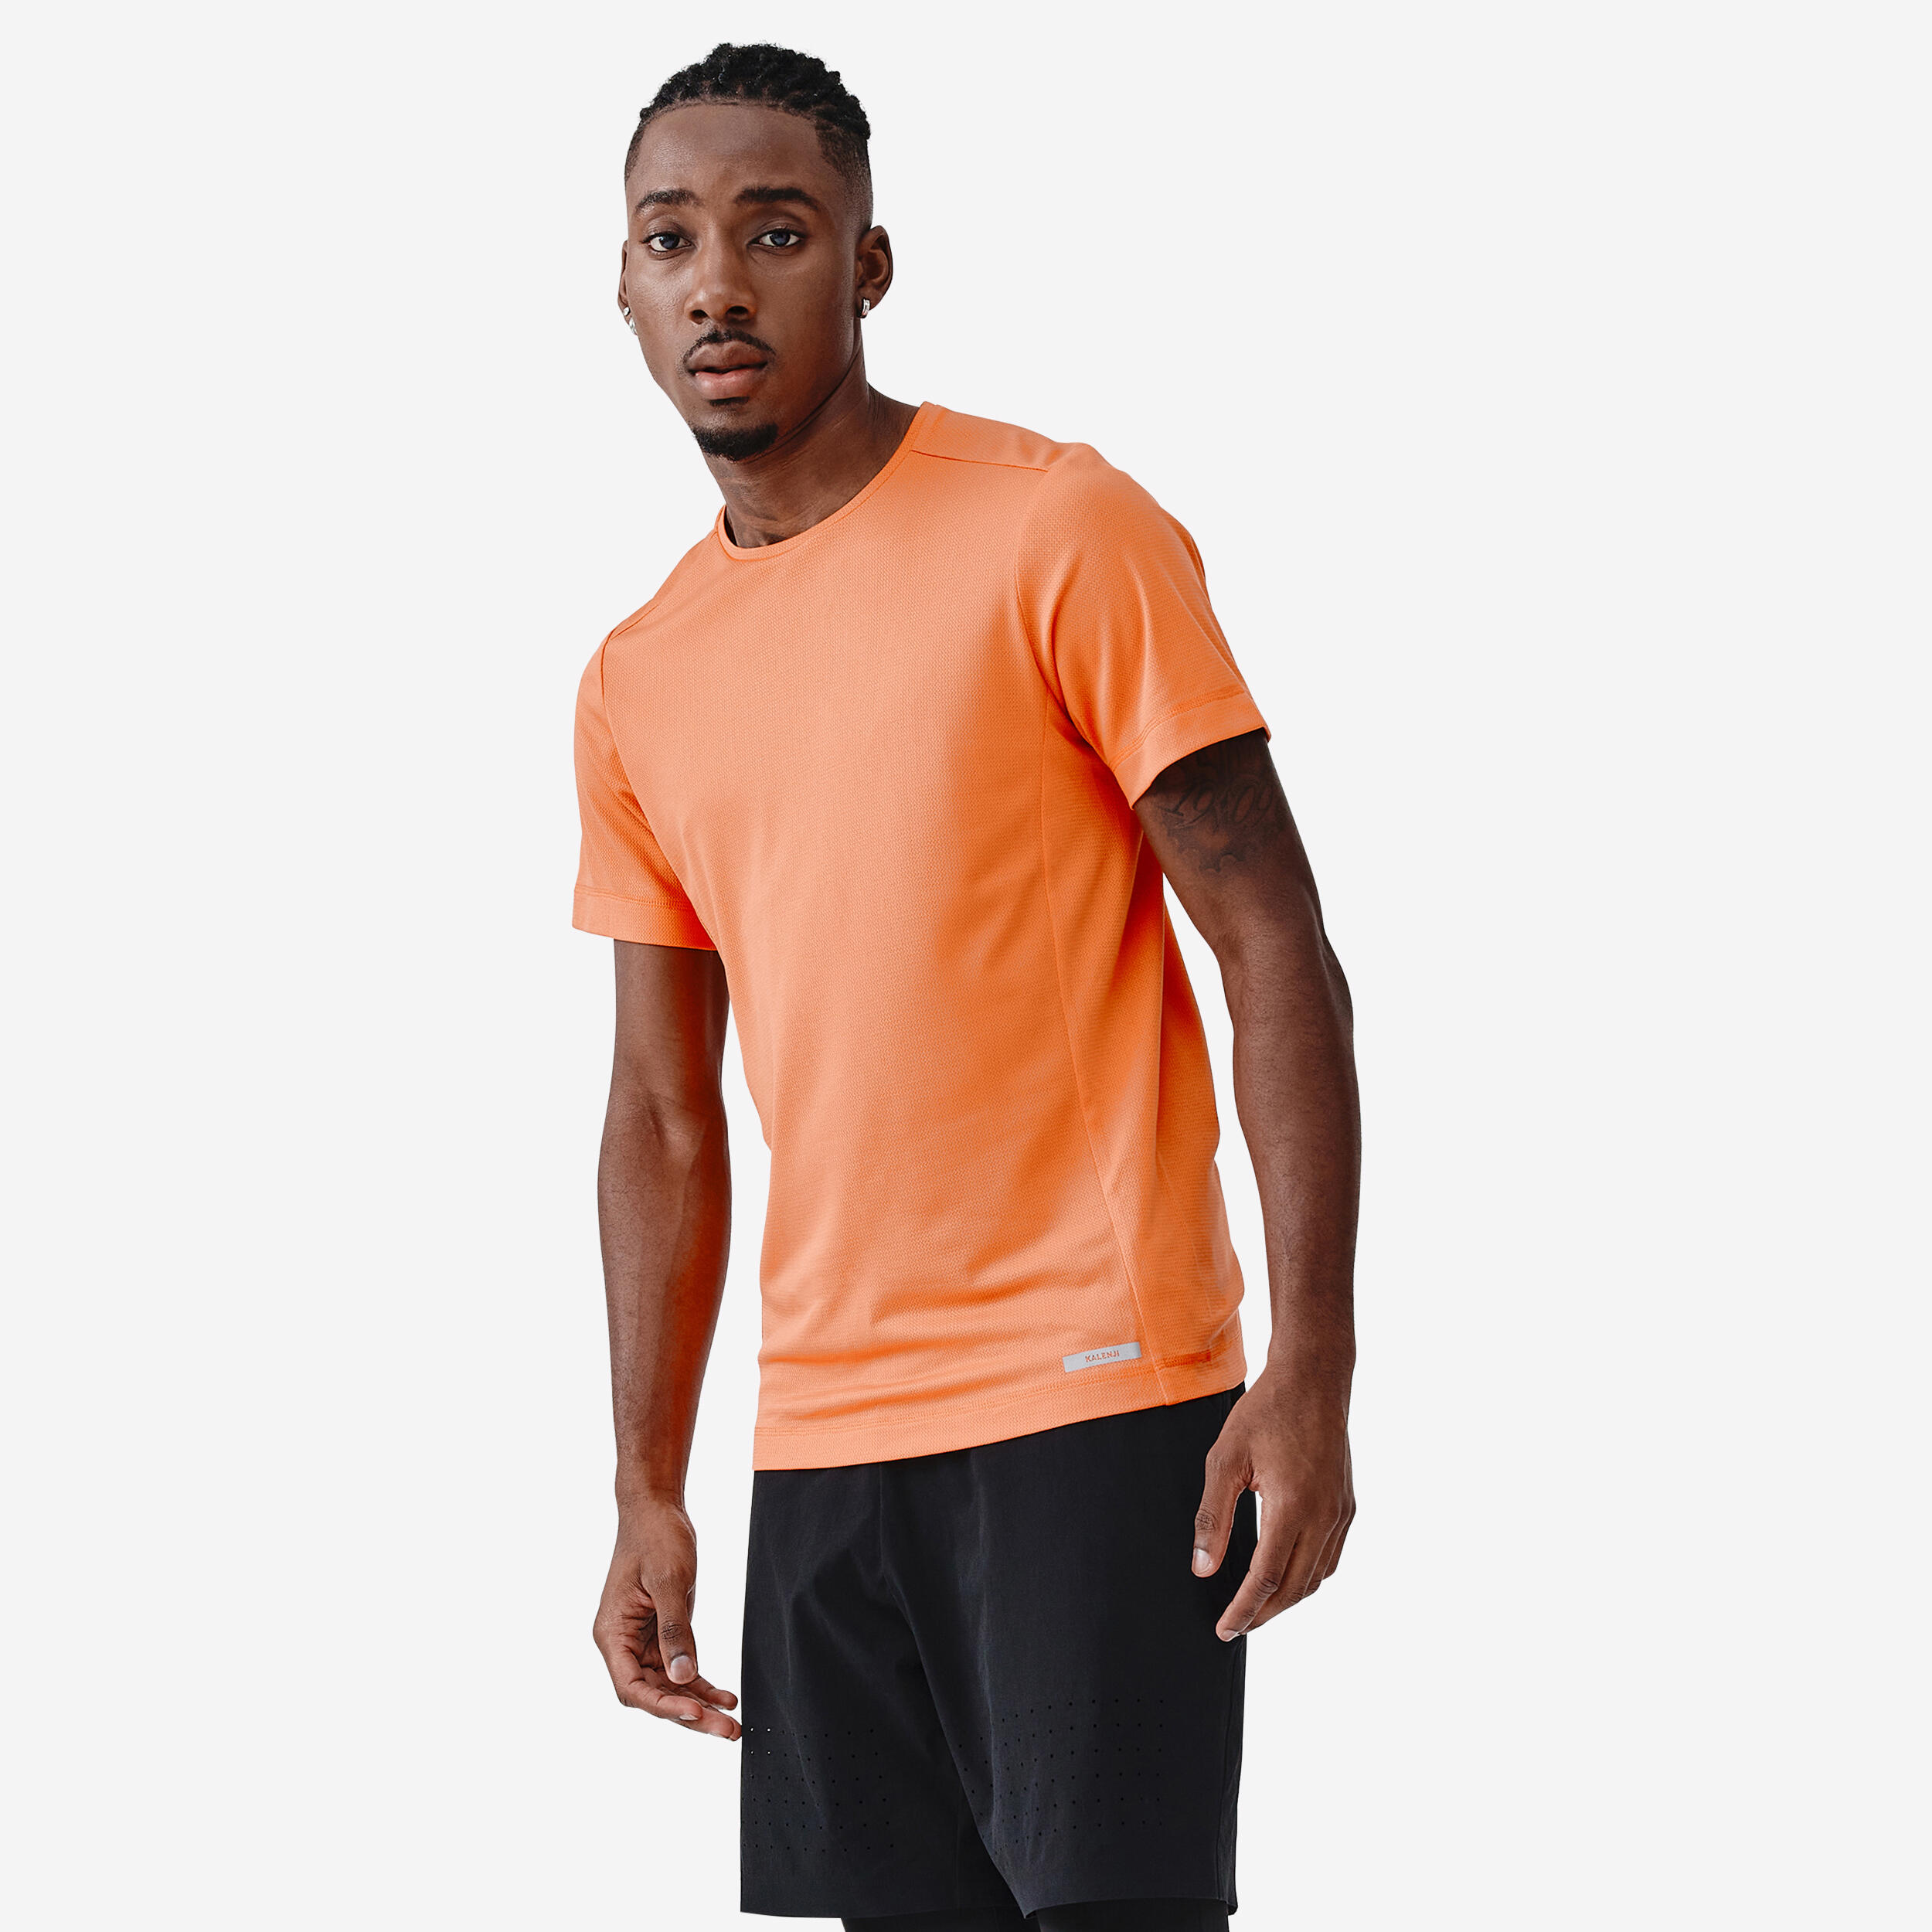 KALENJI Dry Men's Running Breathable T-Shirt - Orange